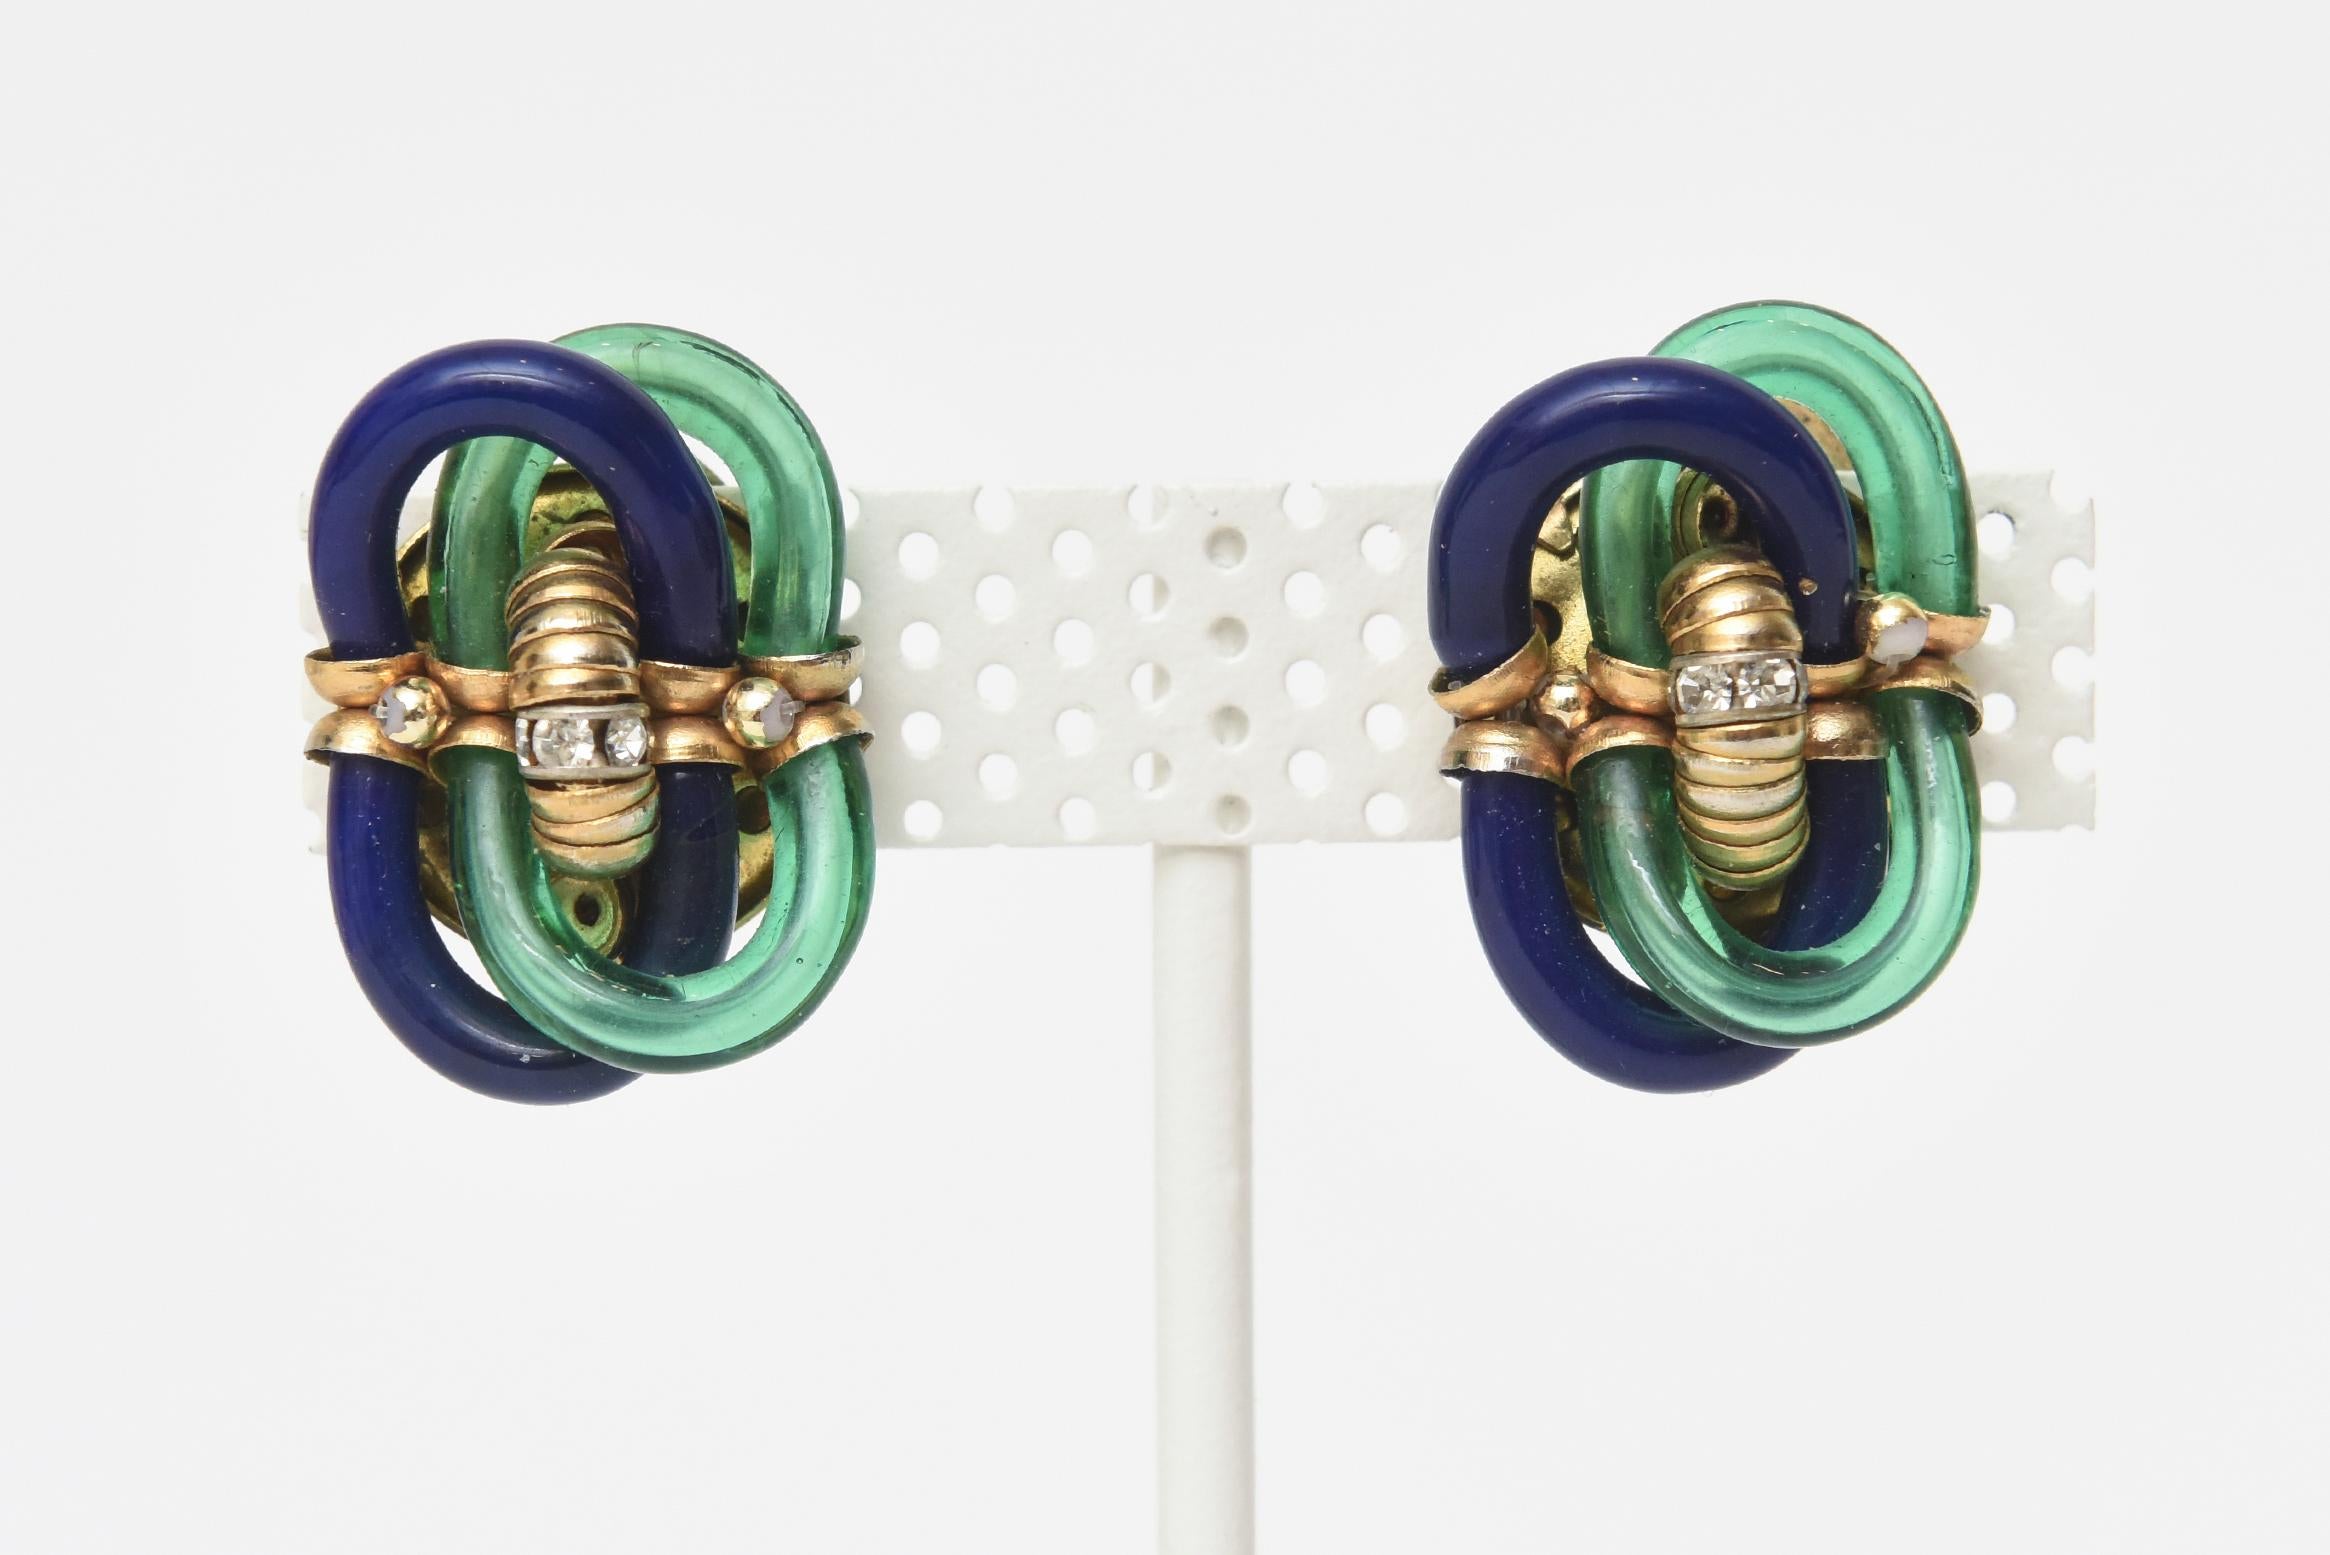 Dieses hübsche Paar Chanel-Ohrringe im frühen Vintage-Stil ist eine Kollaboration zwischen dem italienischen Meisterglaskünstler: Seguso und Chanel. Sie sind sehr früh, in den 50er oder 60er Jahren. Das leuchtende, gedrehte blaue und grüne Glas ist